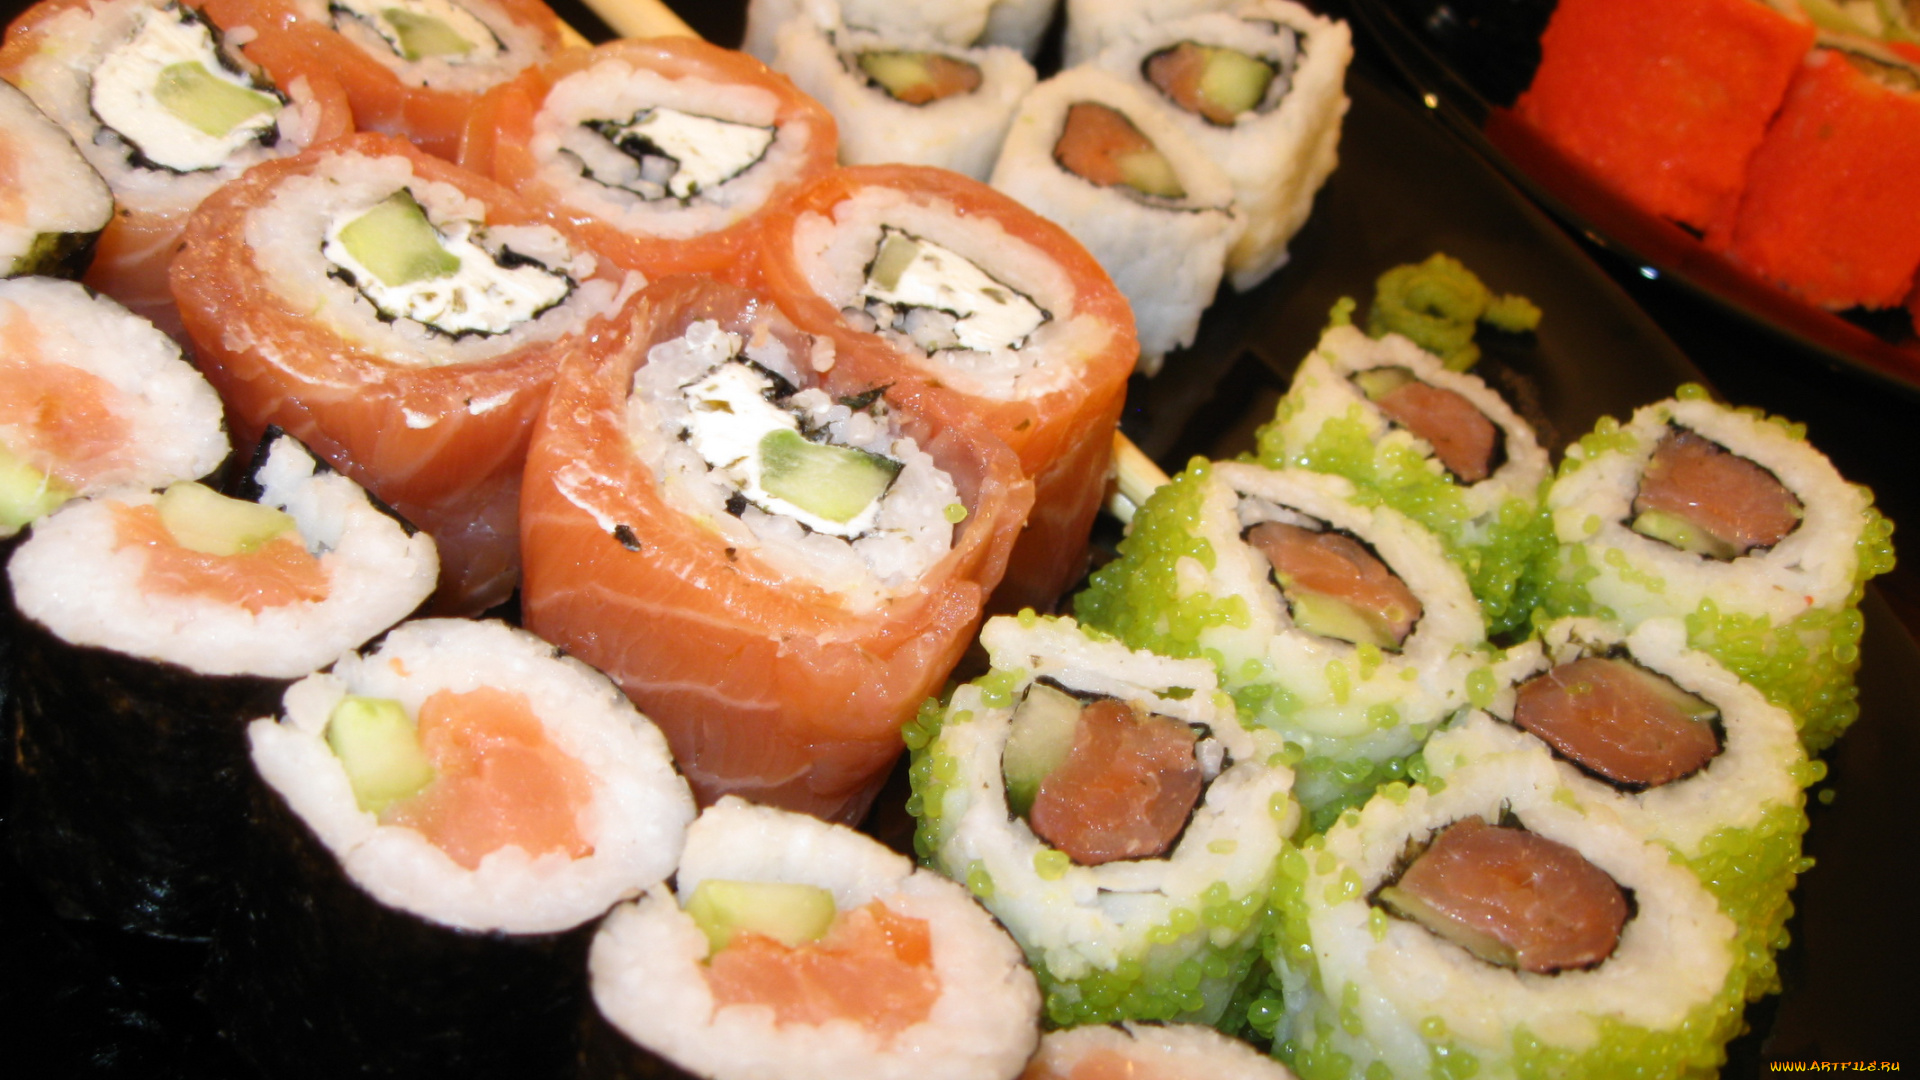 автор, varvarra, еда, рыба, морепродукты, суши, роллы, палочки, японская, кухня